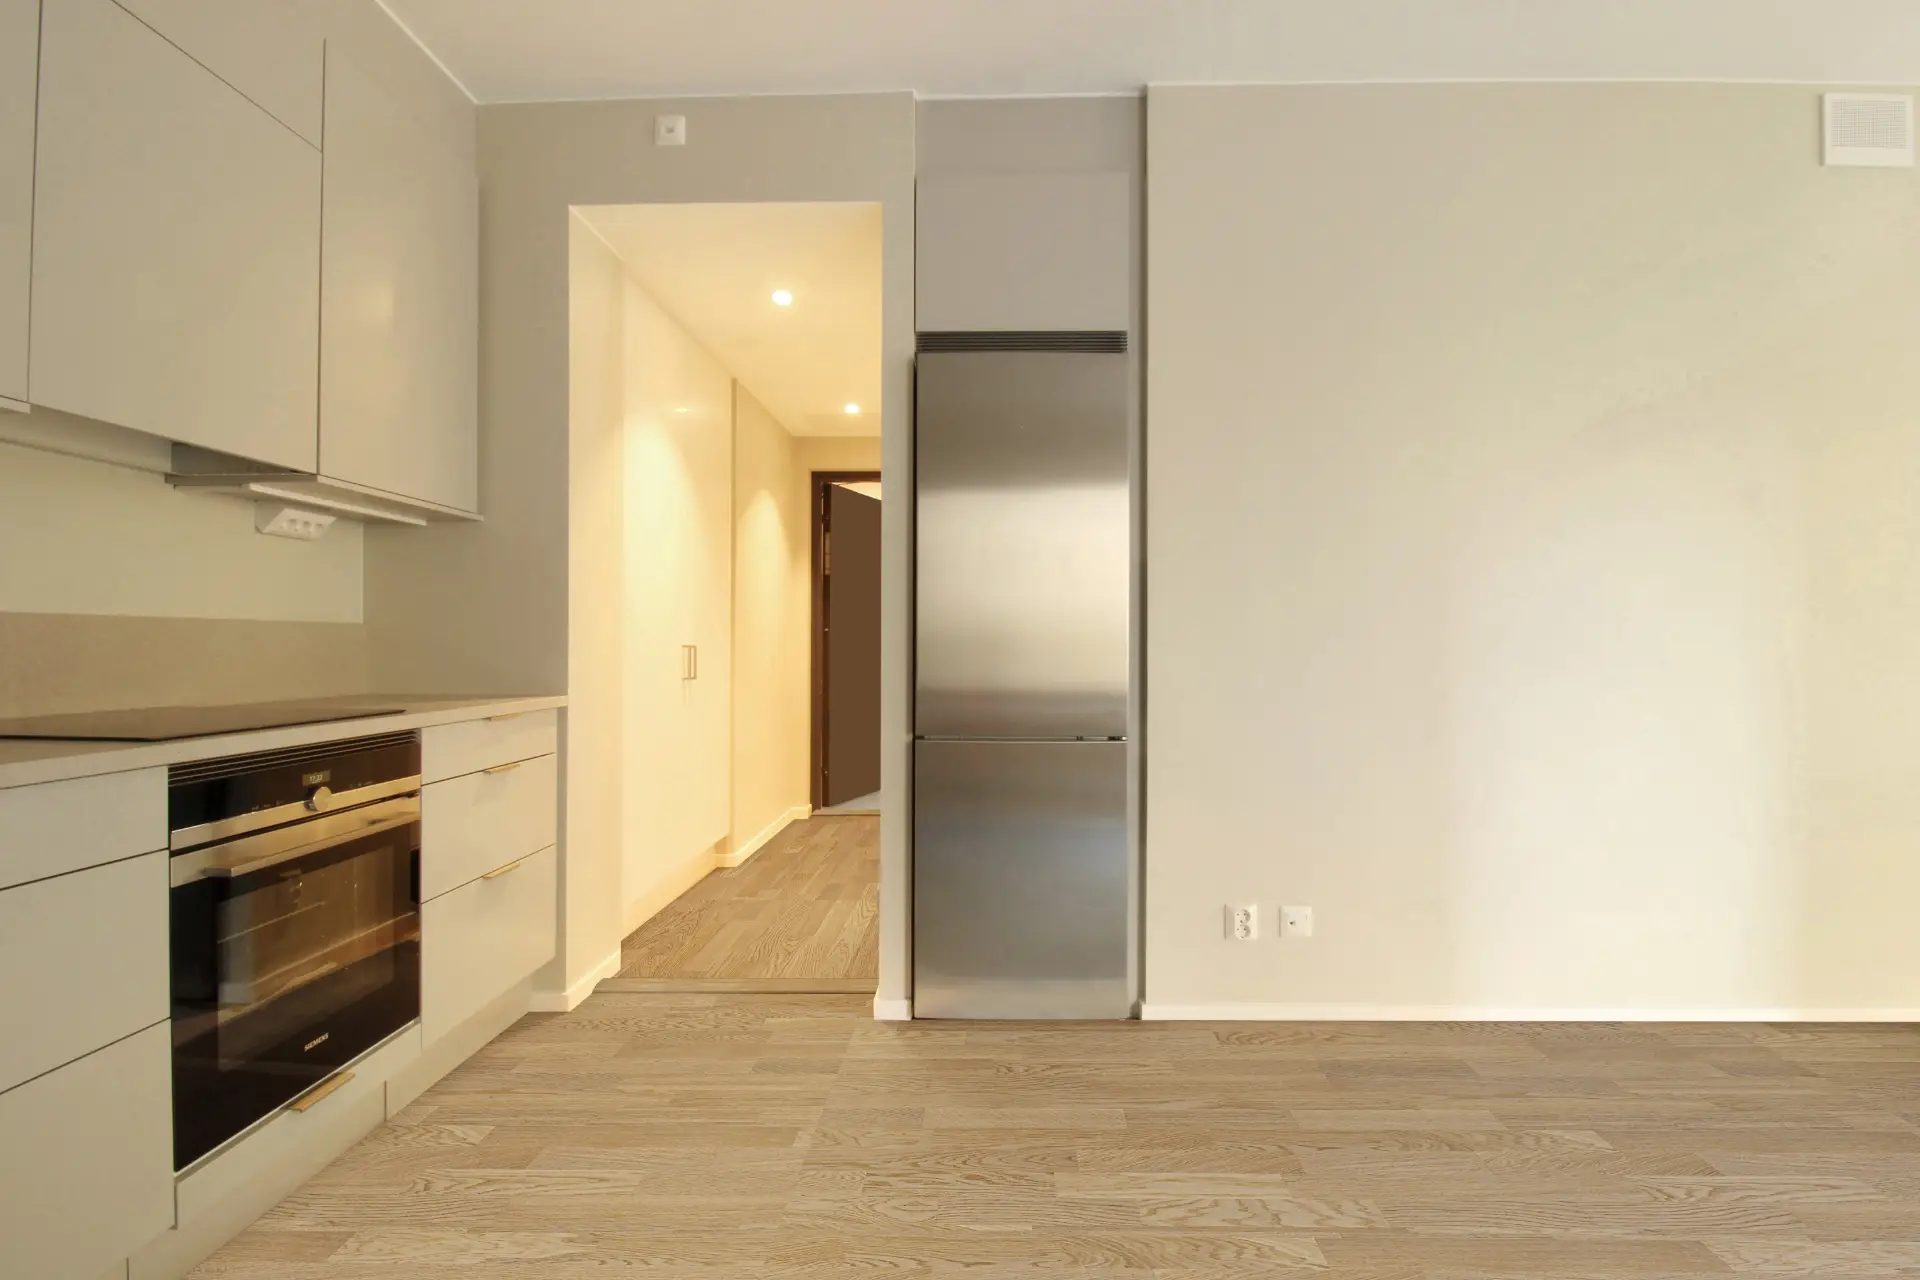 Ett kök med ljusa trägolv, vita väggar och inbyggda rostfria vitvaror inklusive ugn och kylskåp.